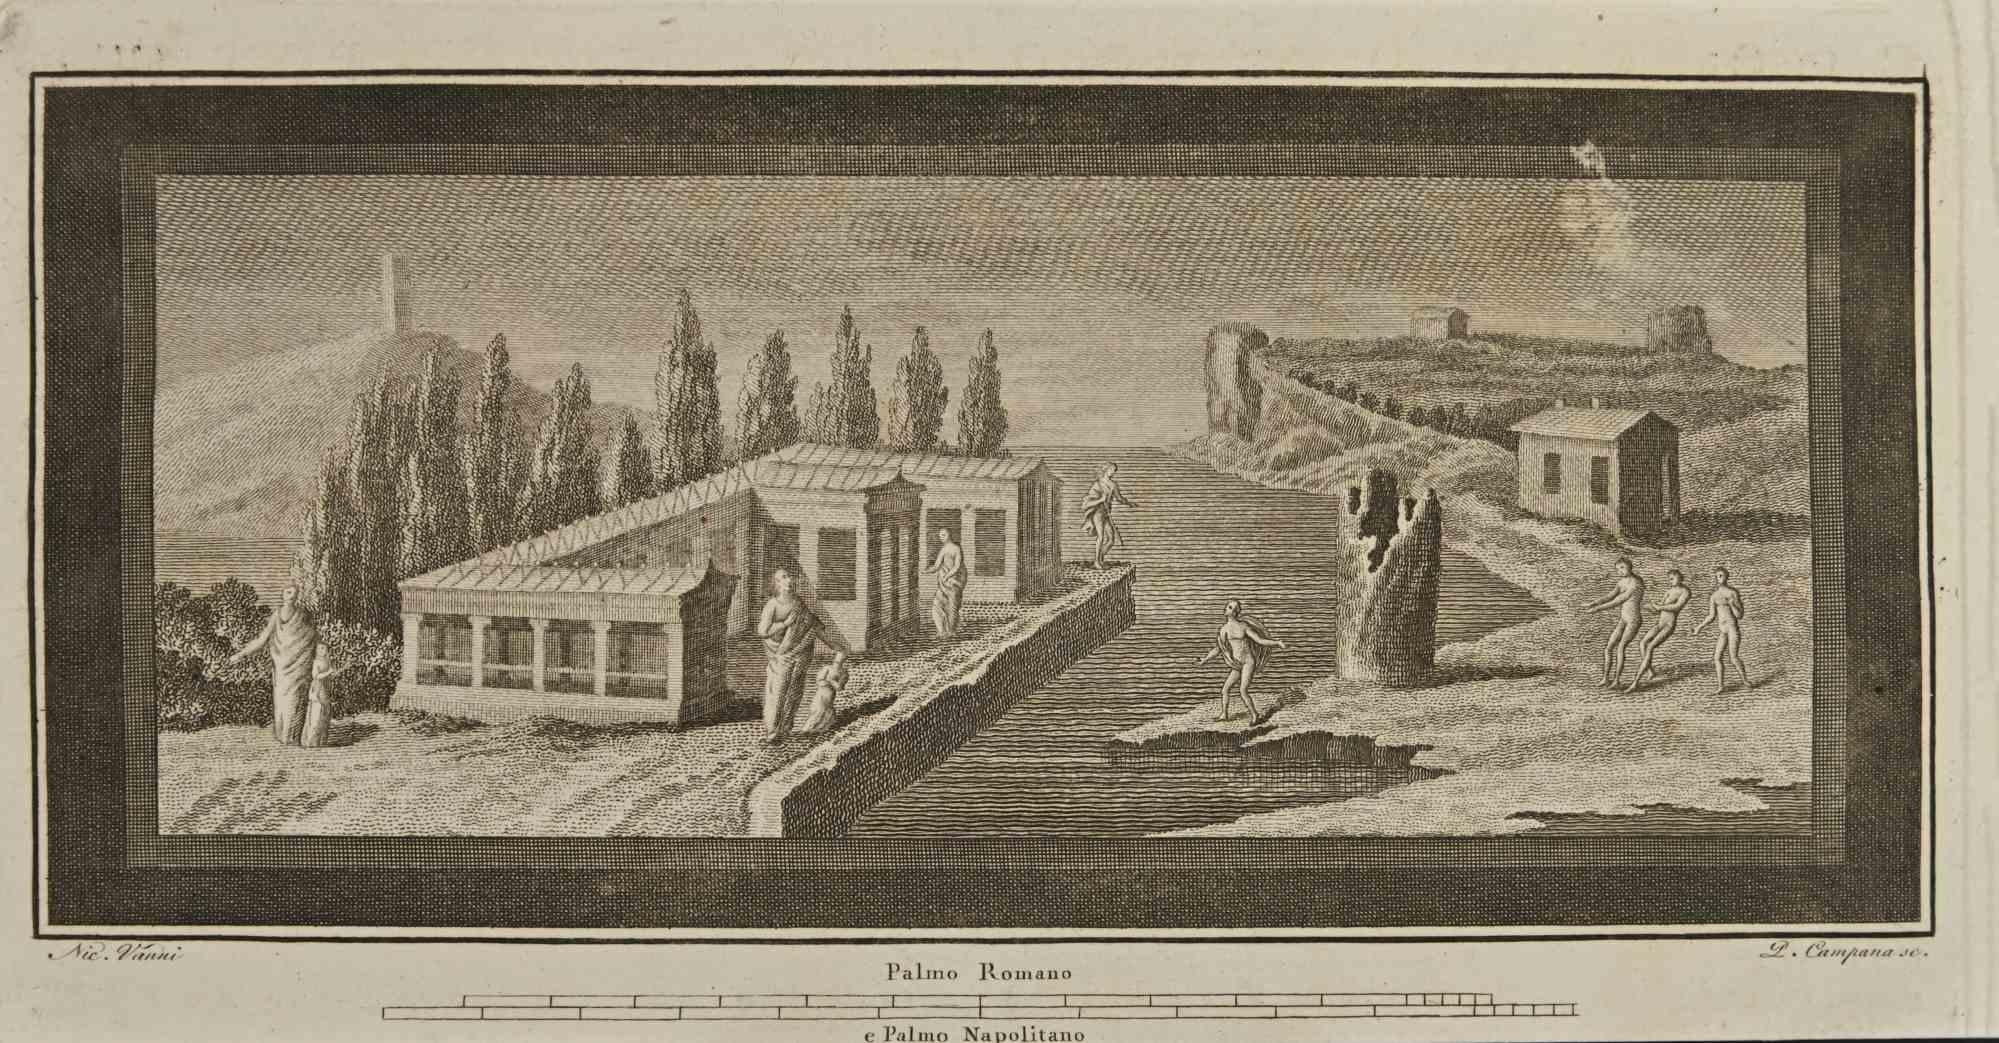 Inondation dans un ancien village romain des "Antiquités d'Herculanum" est une gravure sur papier réalisée par Pietro Campana au 18ème siècle.

Signé sur la plaque.

Bonnes conditions.

La gravure appartient à la suite d'estampes "Antiquités